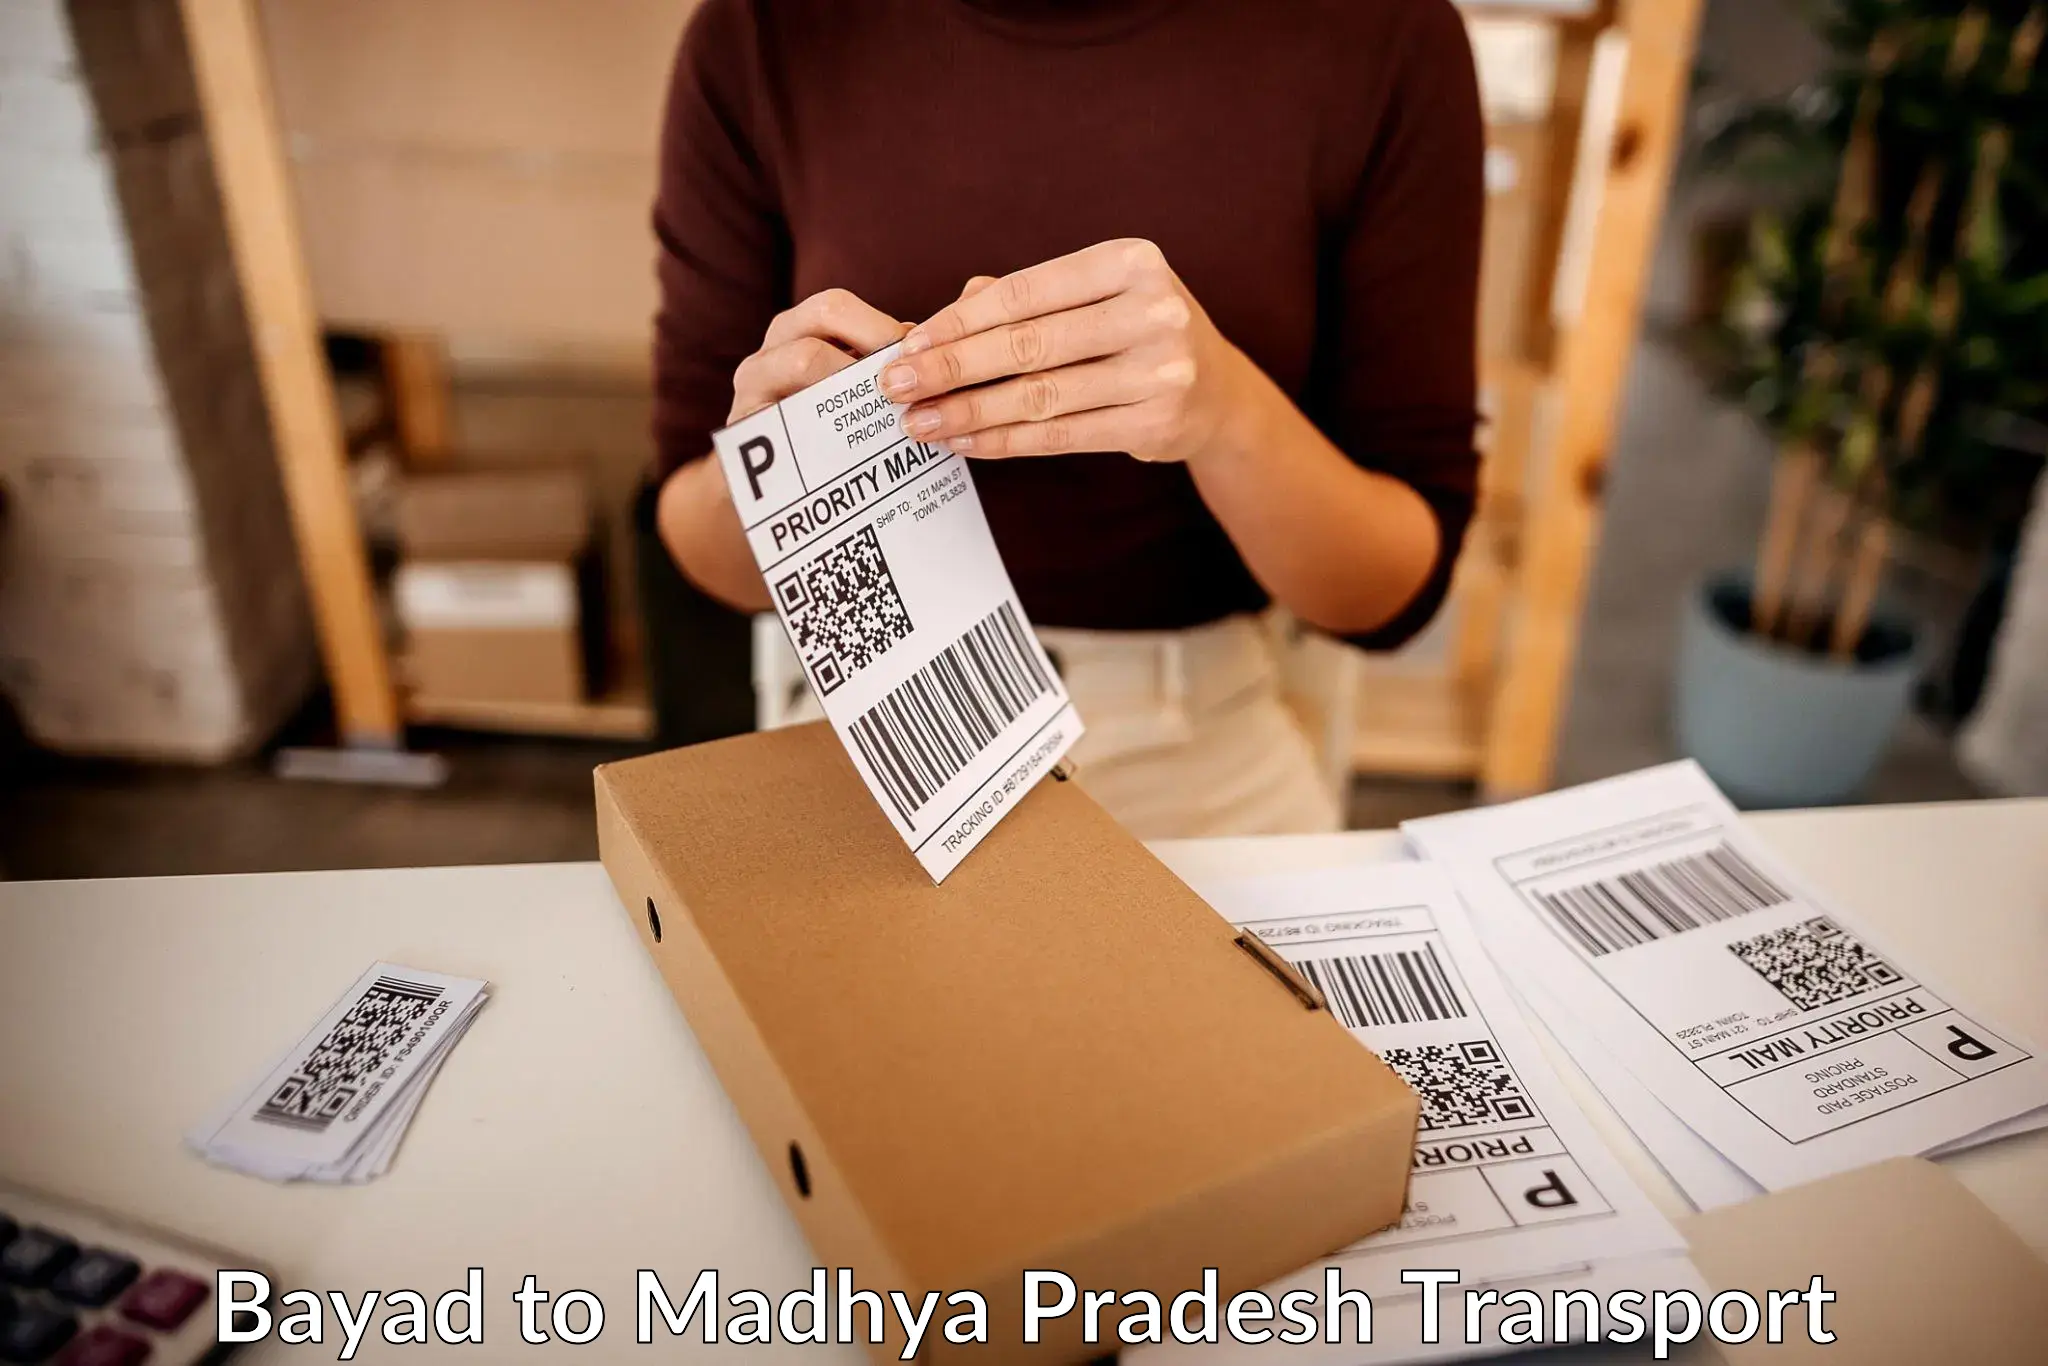 Shipping partner Bayad to Raghogarh